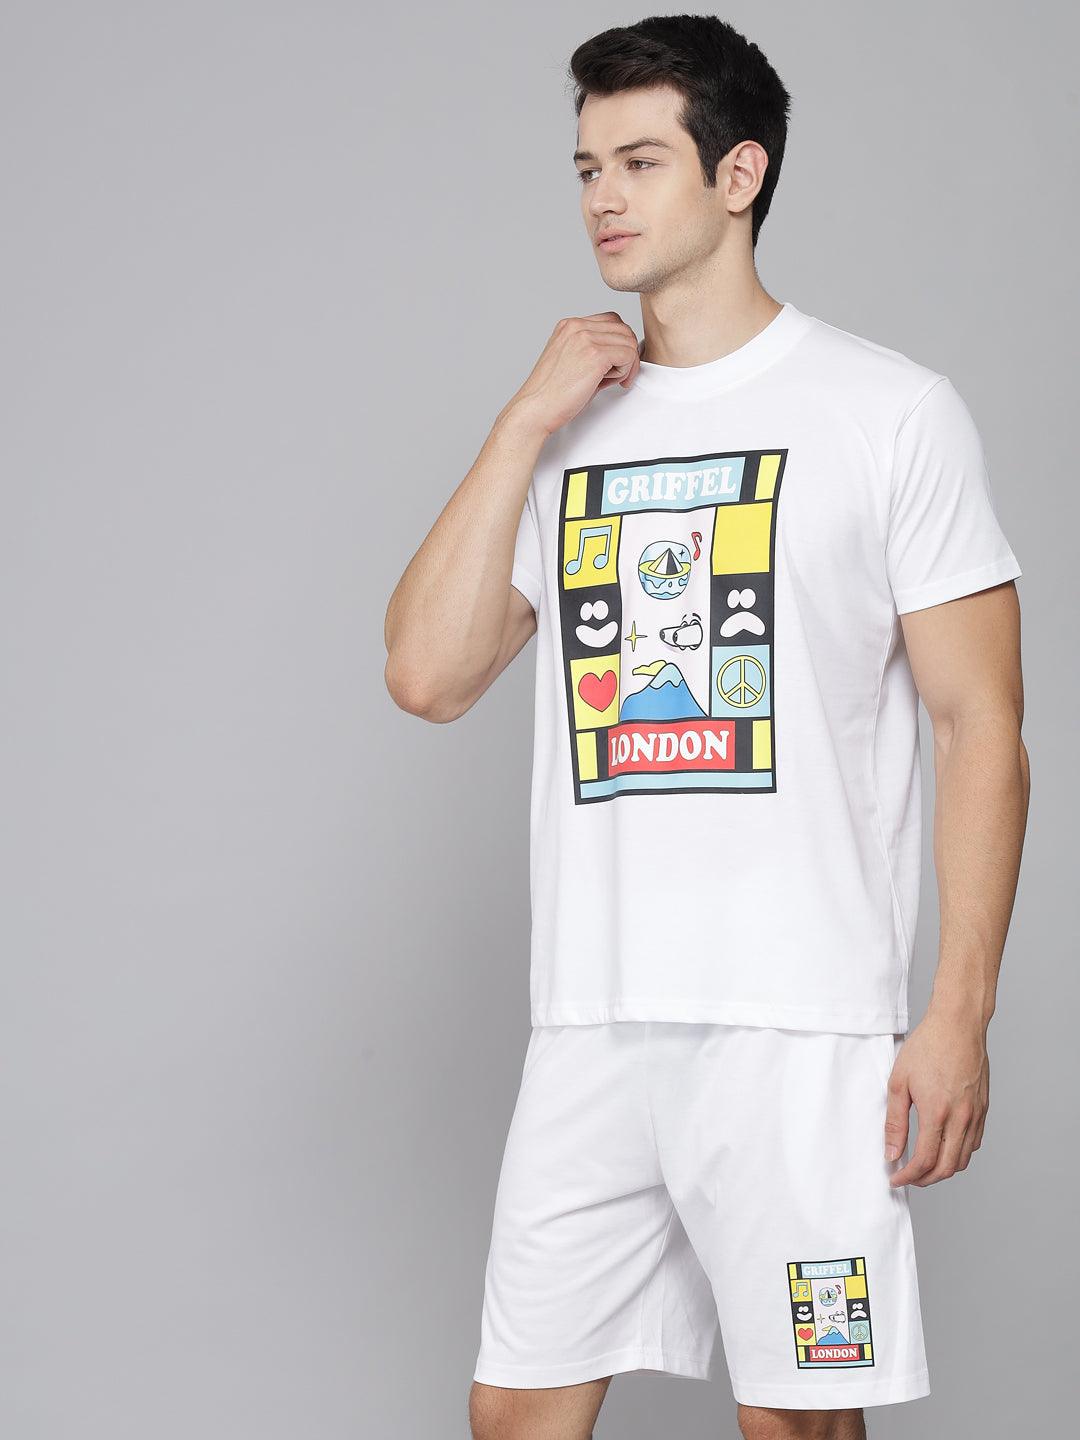 GRIFFEL Men Placement Print White Regular fit T-shirt - griffel